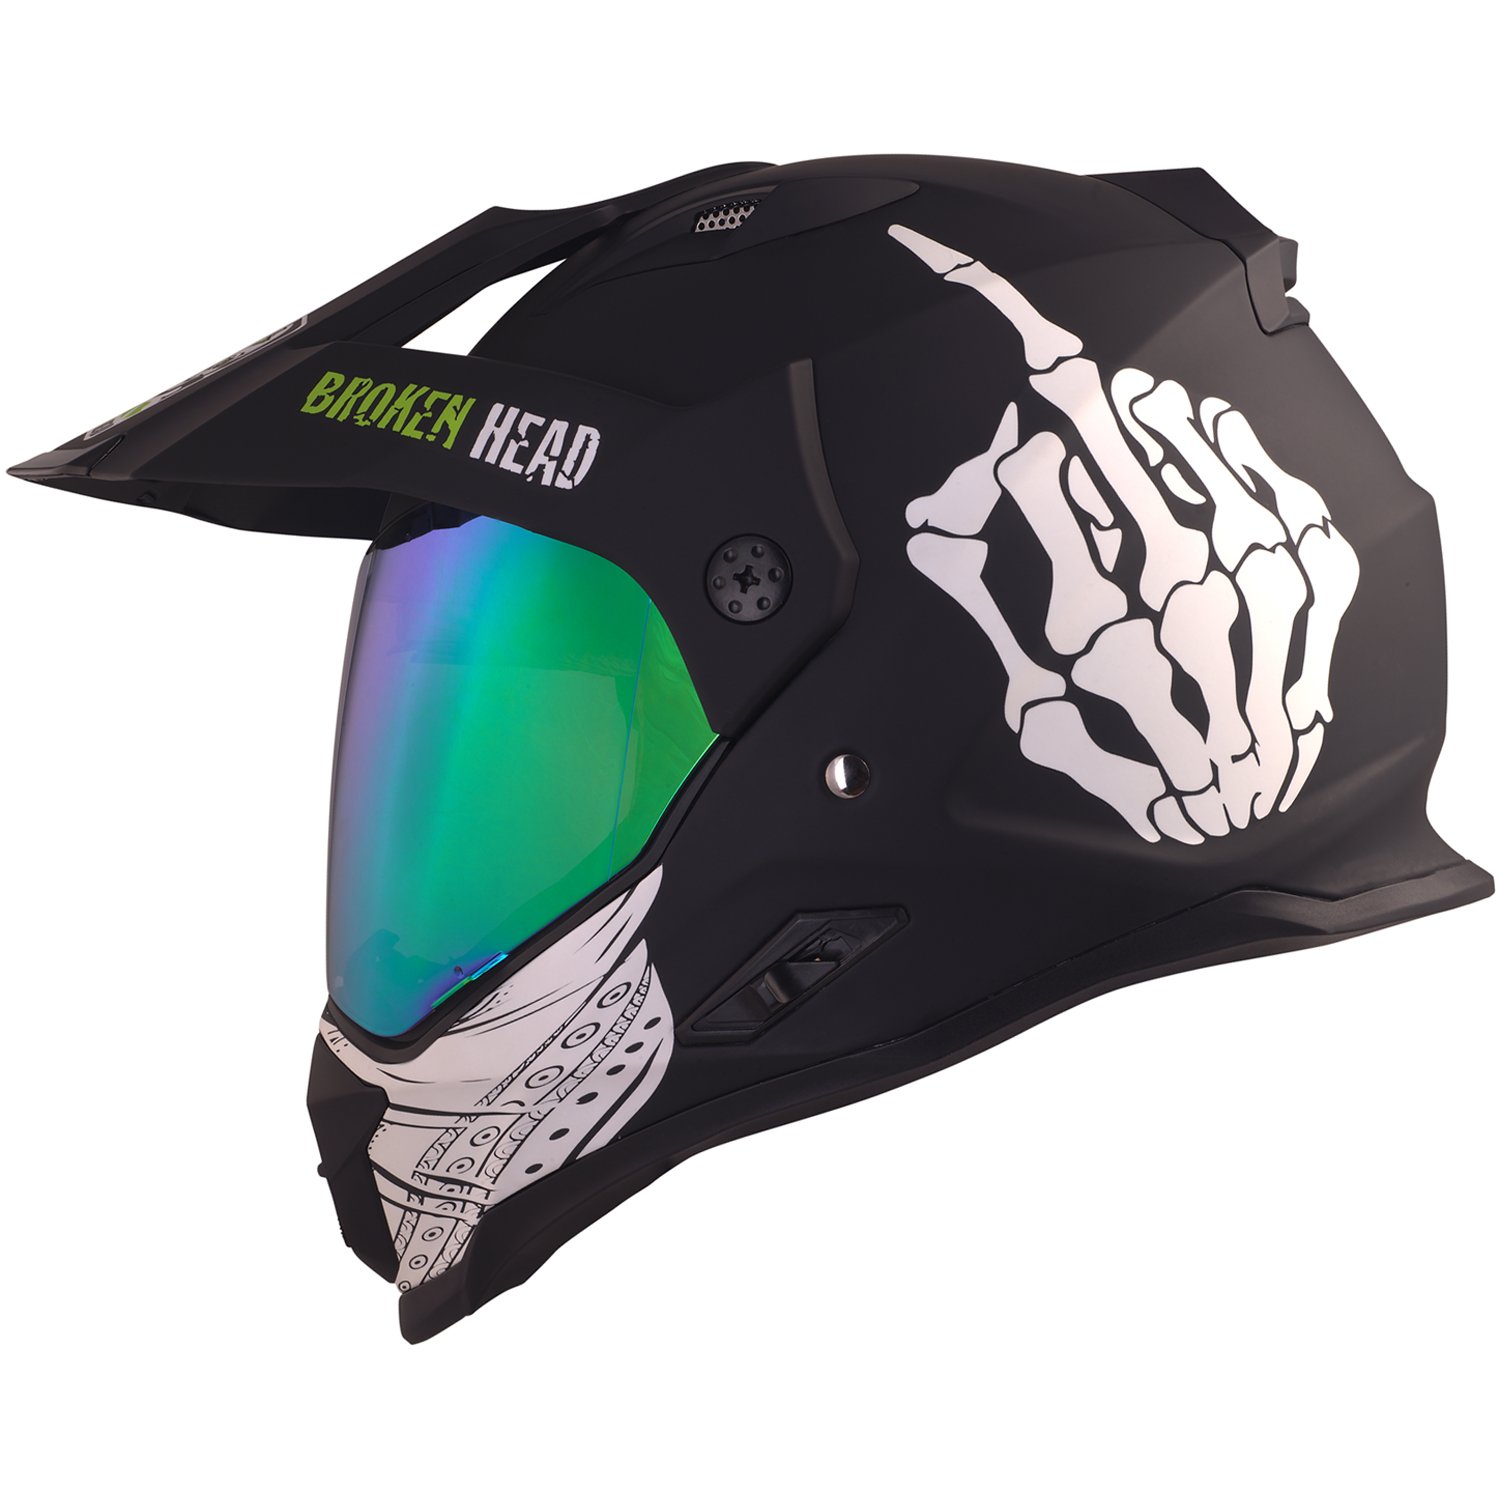 Broken Head Street Rebel grün Motocross-Helm Set mit grün verspiegeltem Visier - Enduro-Helm - MX Cross-Helm mit Sonnenblende - Quad-Helm (M 57-58 cm) von Broken Head